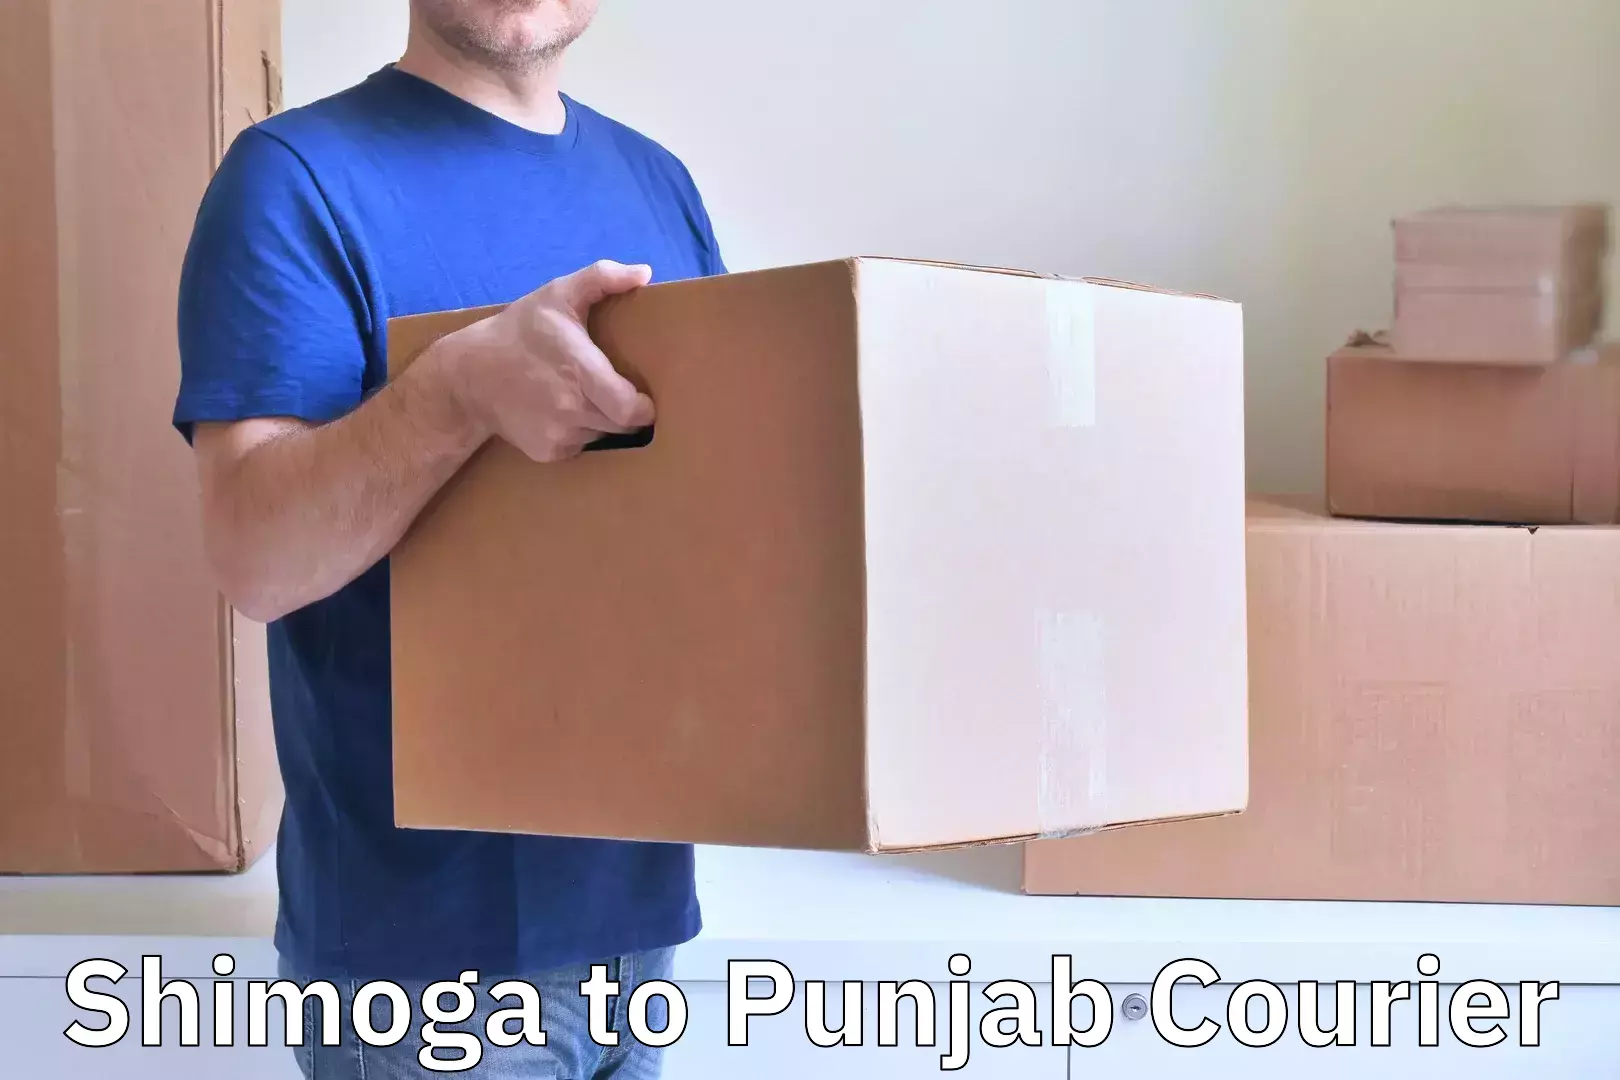 Luggage delivery providers Shimoga to Kapurthala